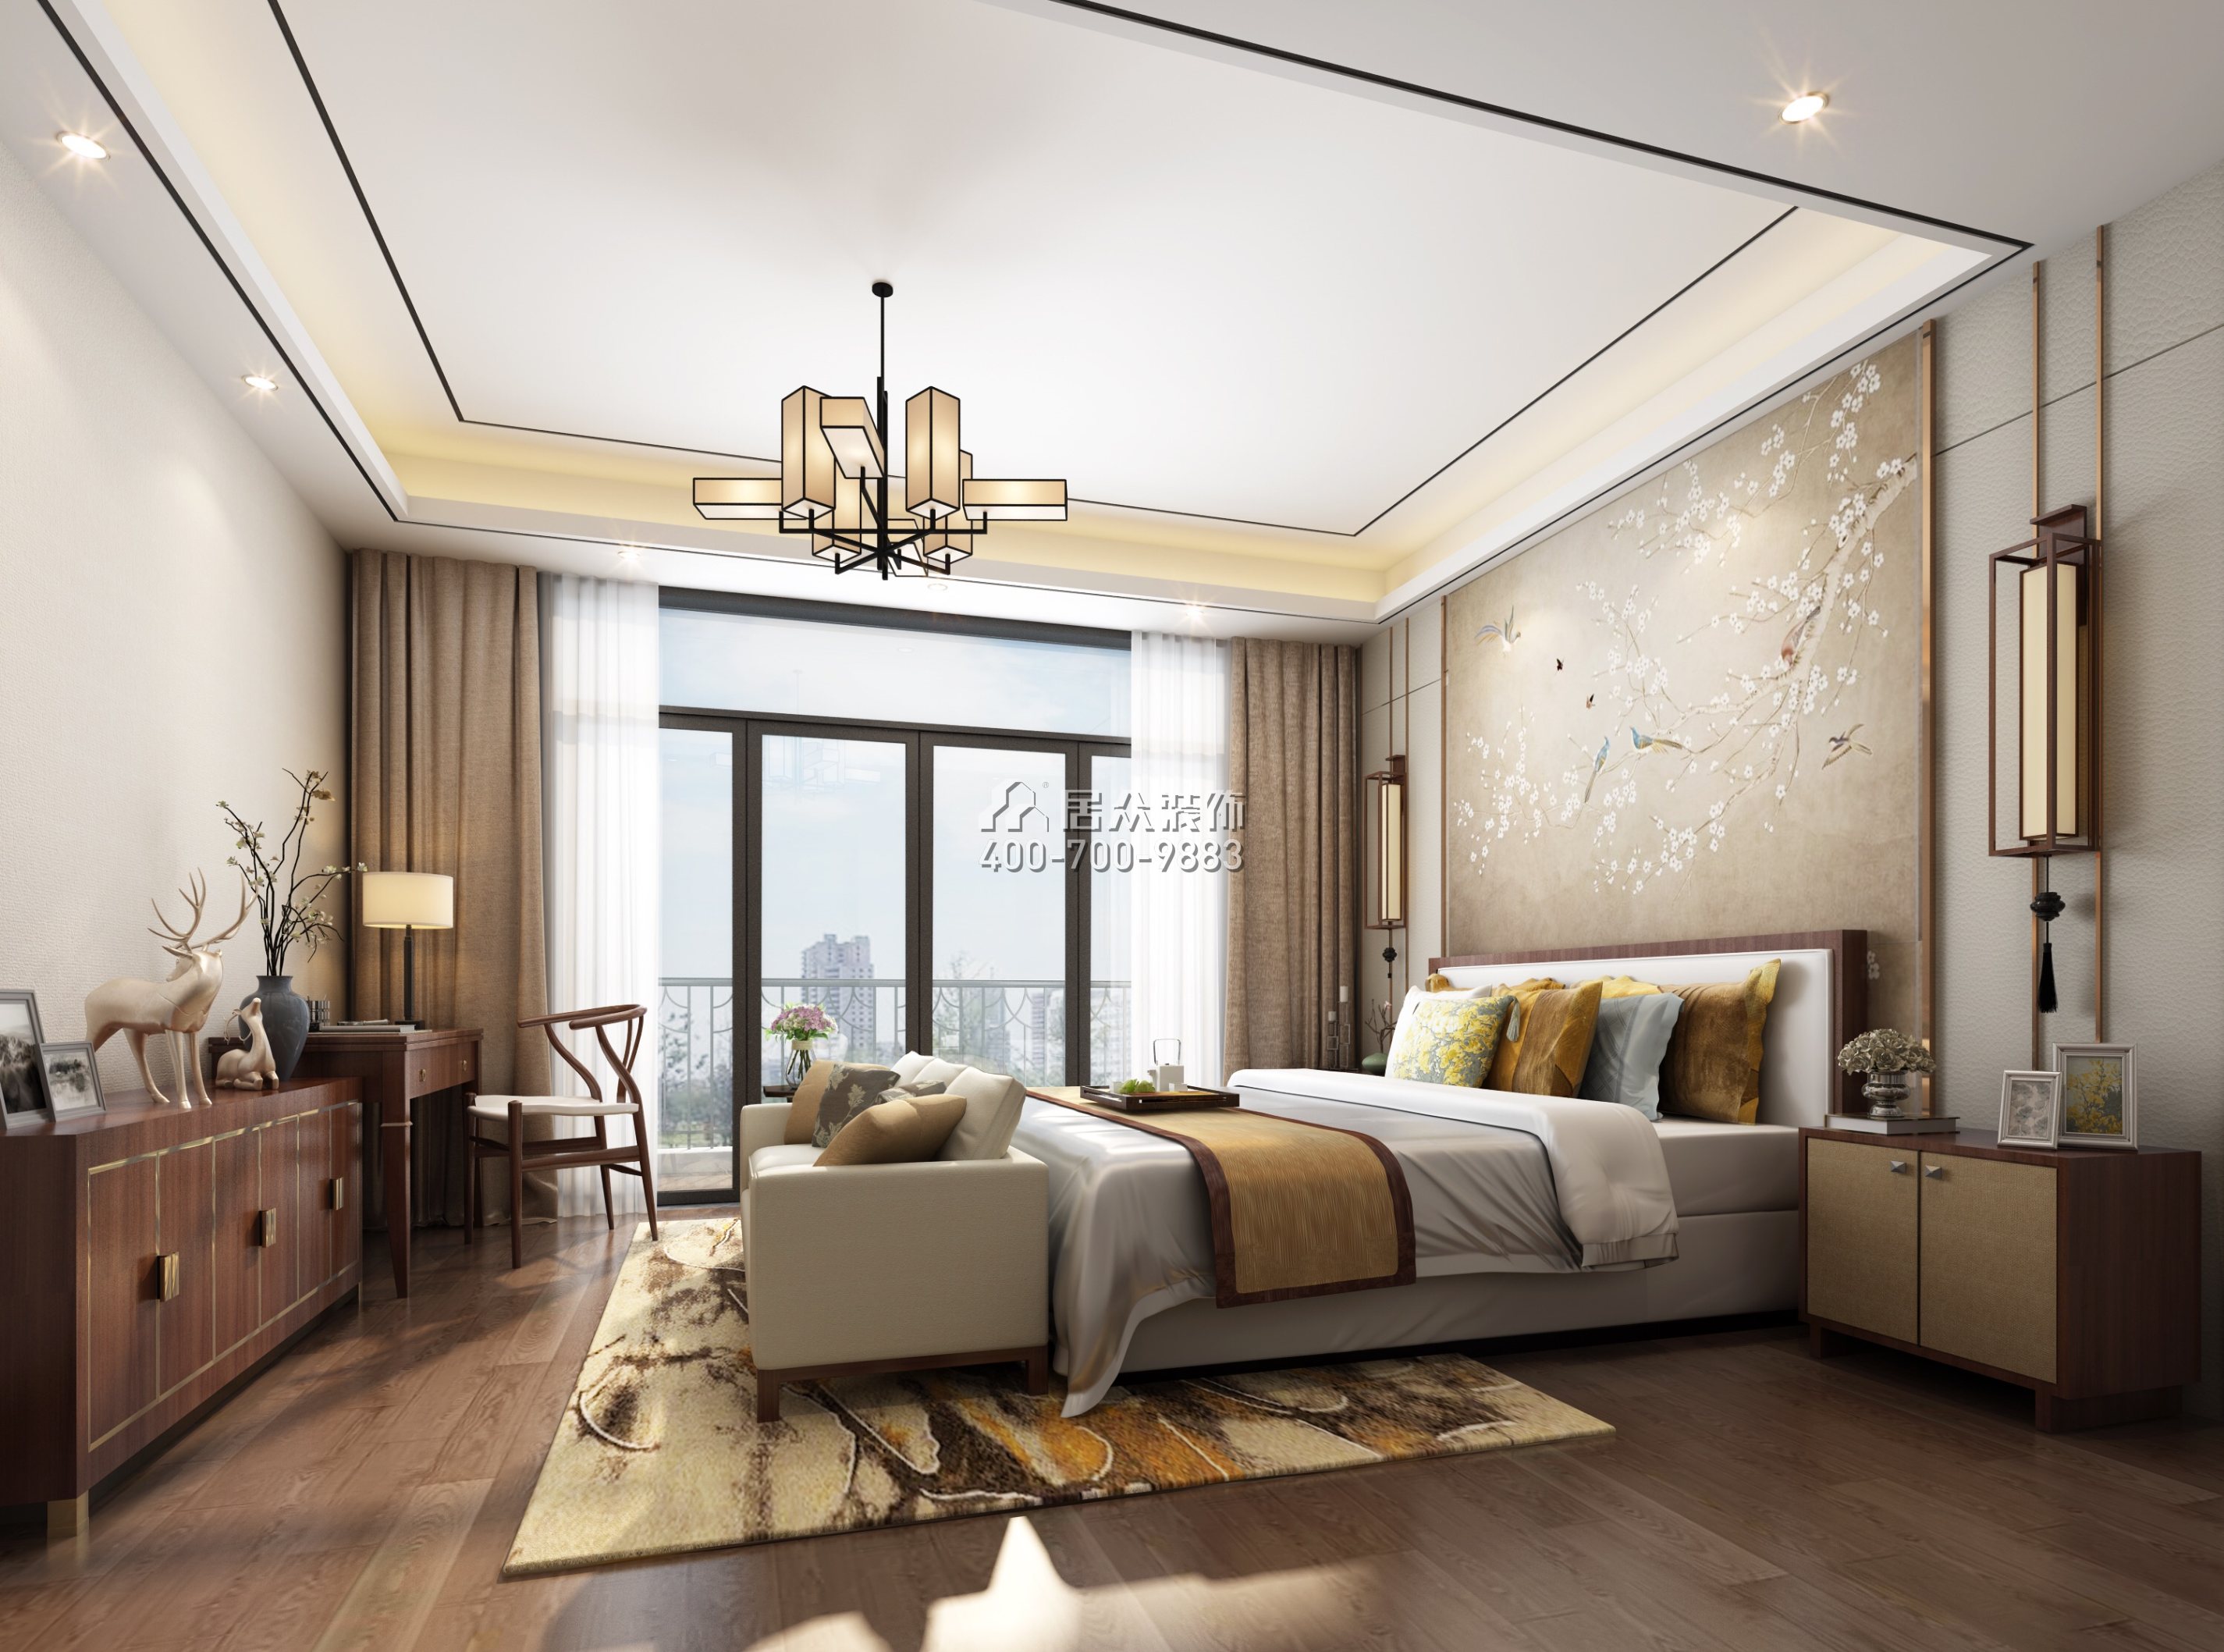 海逸豪庭177平方米中式风格复式户型卧室装修效果图